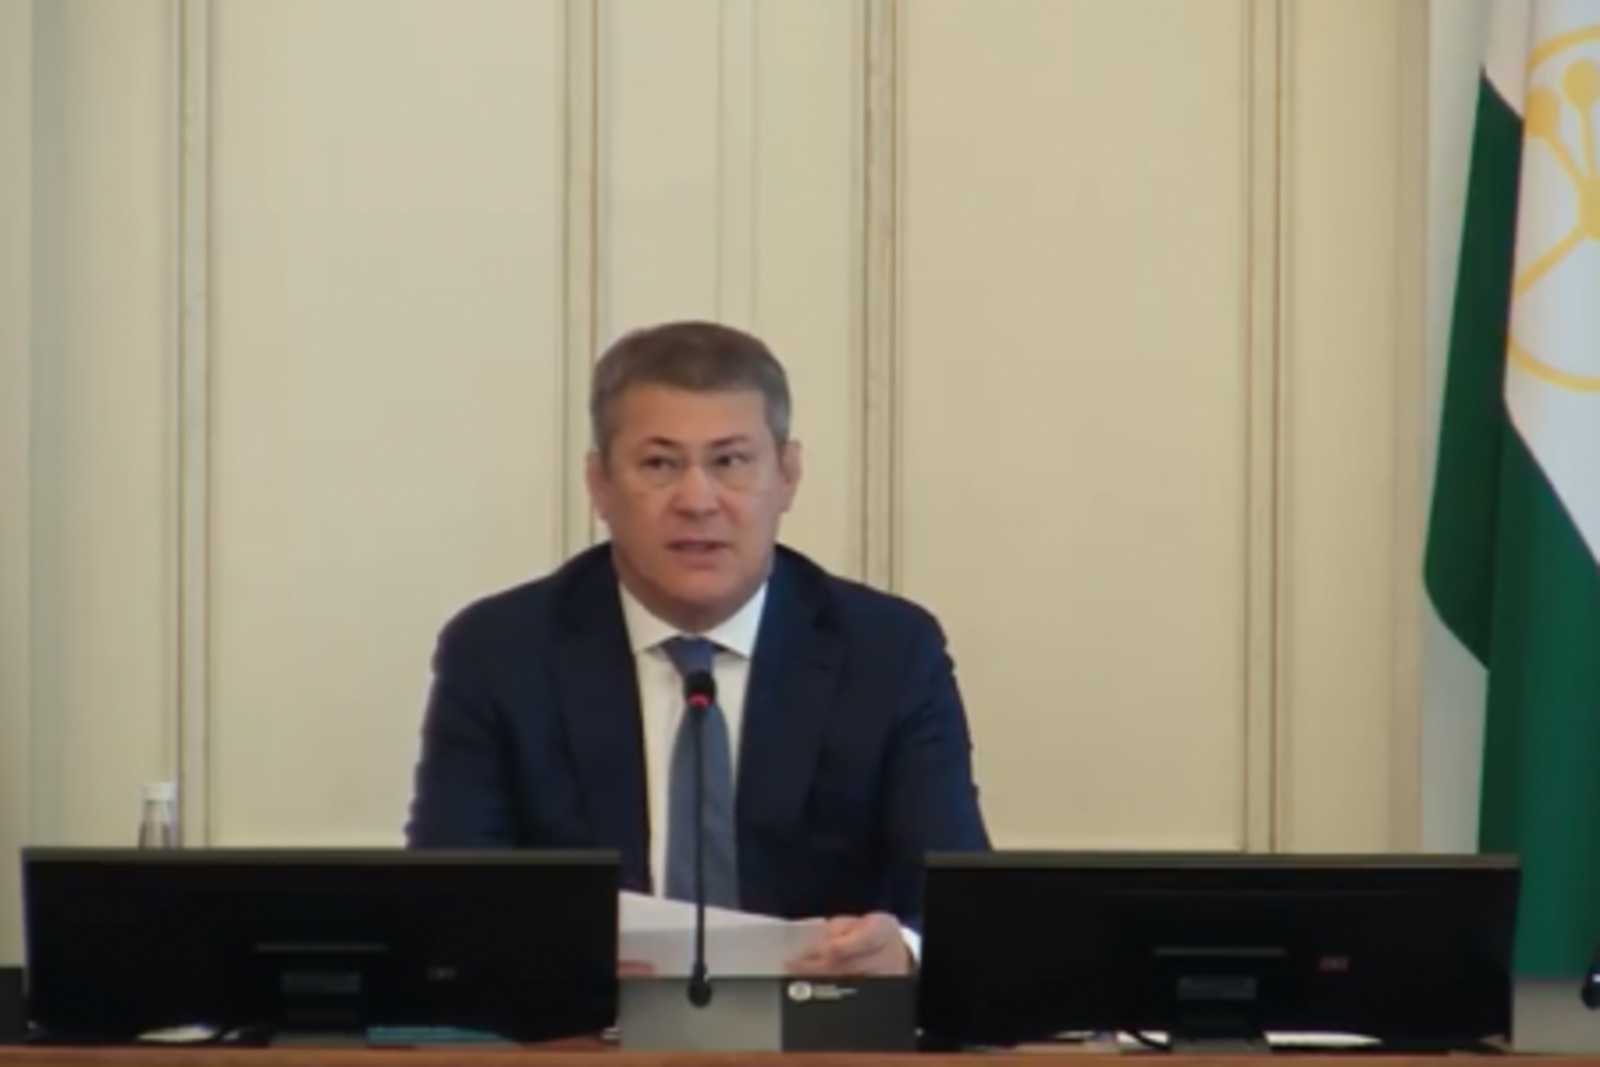 Оперативное совещание в Правительстве Республики Башкортостан: прямая трансляция 13 августа 2019 год